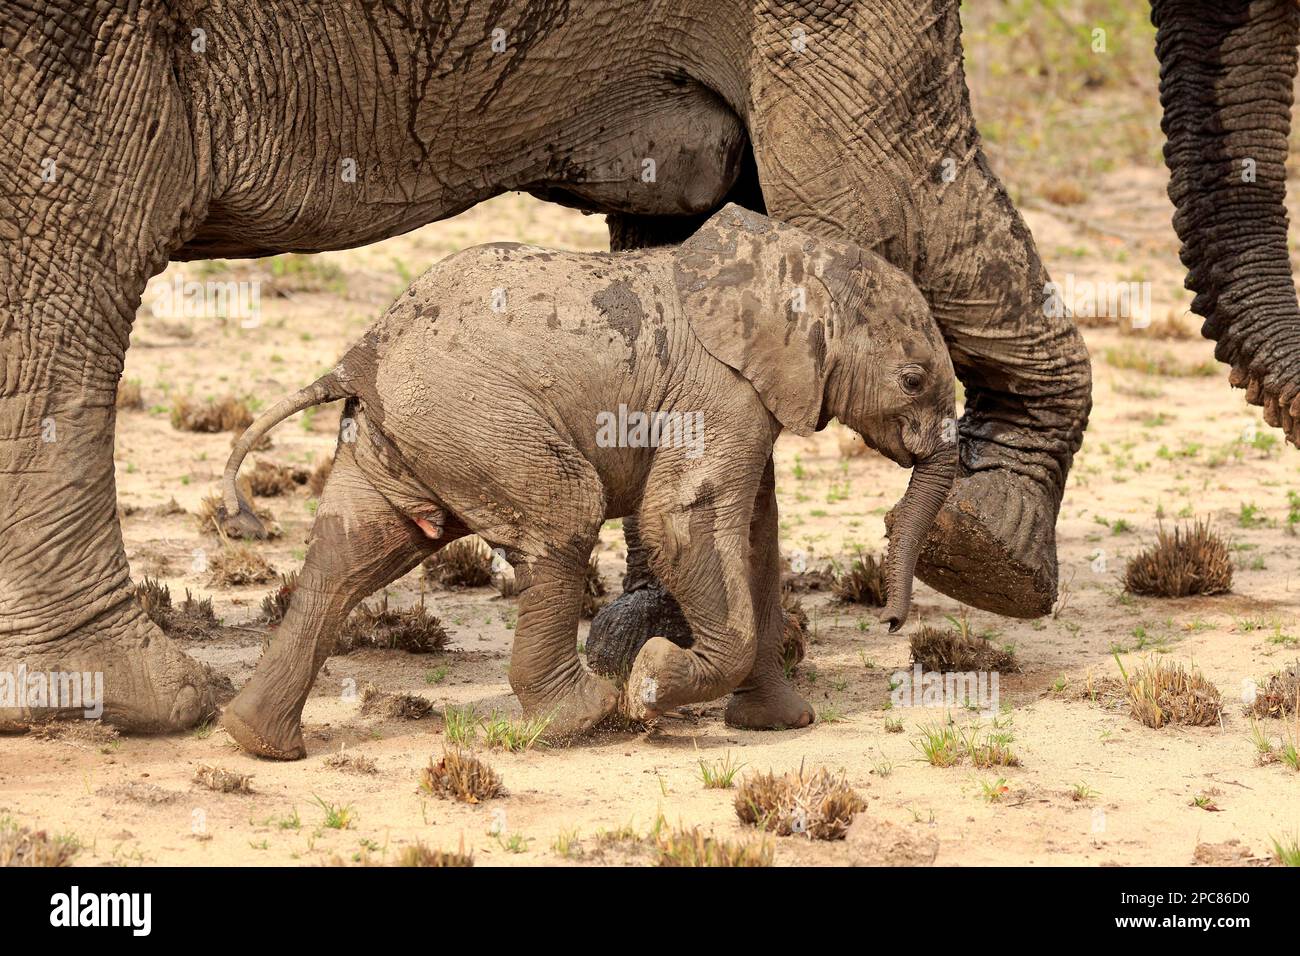 Éléphant d'Afrique (Loxodonta africana), femelle adulte avec jeune, réserve de gibier de sable de Sabi, parc national Kruger, Afrique du Sud, Afrique Banque D'Images